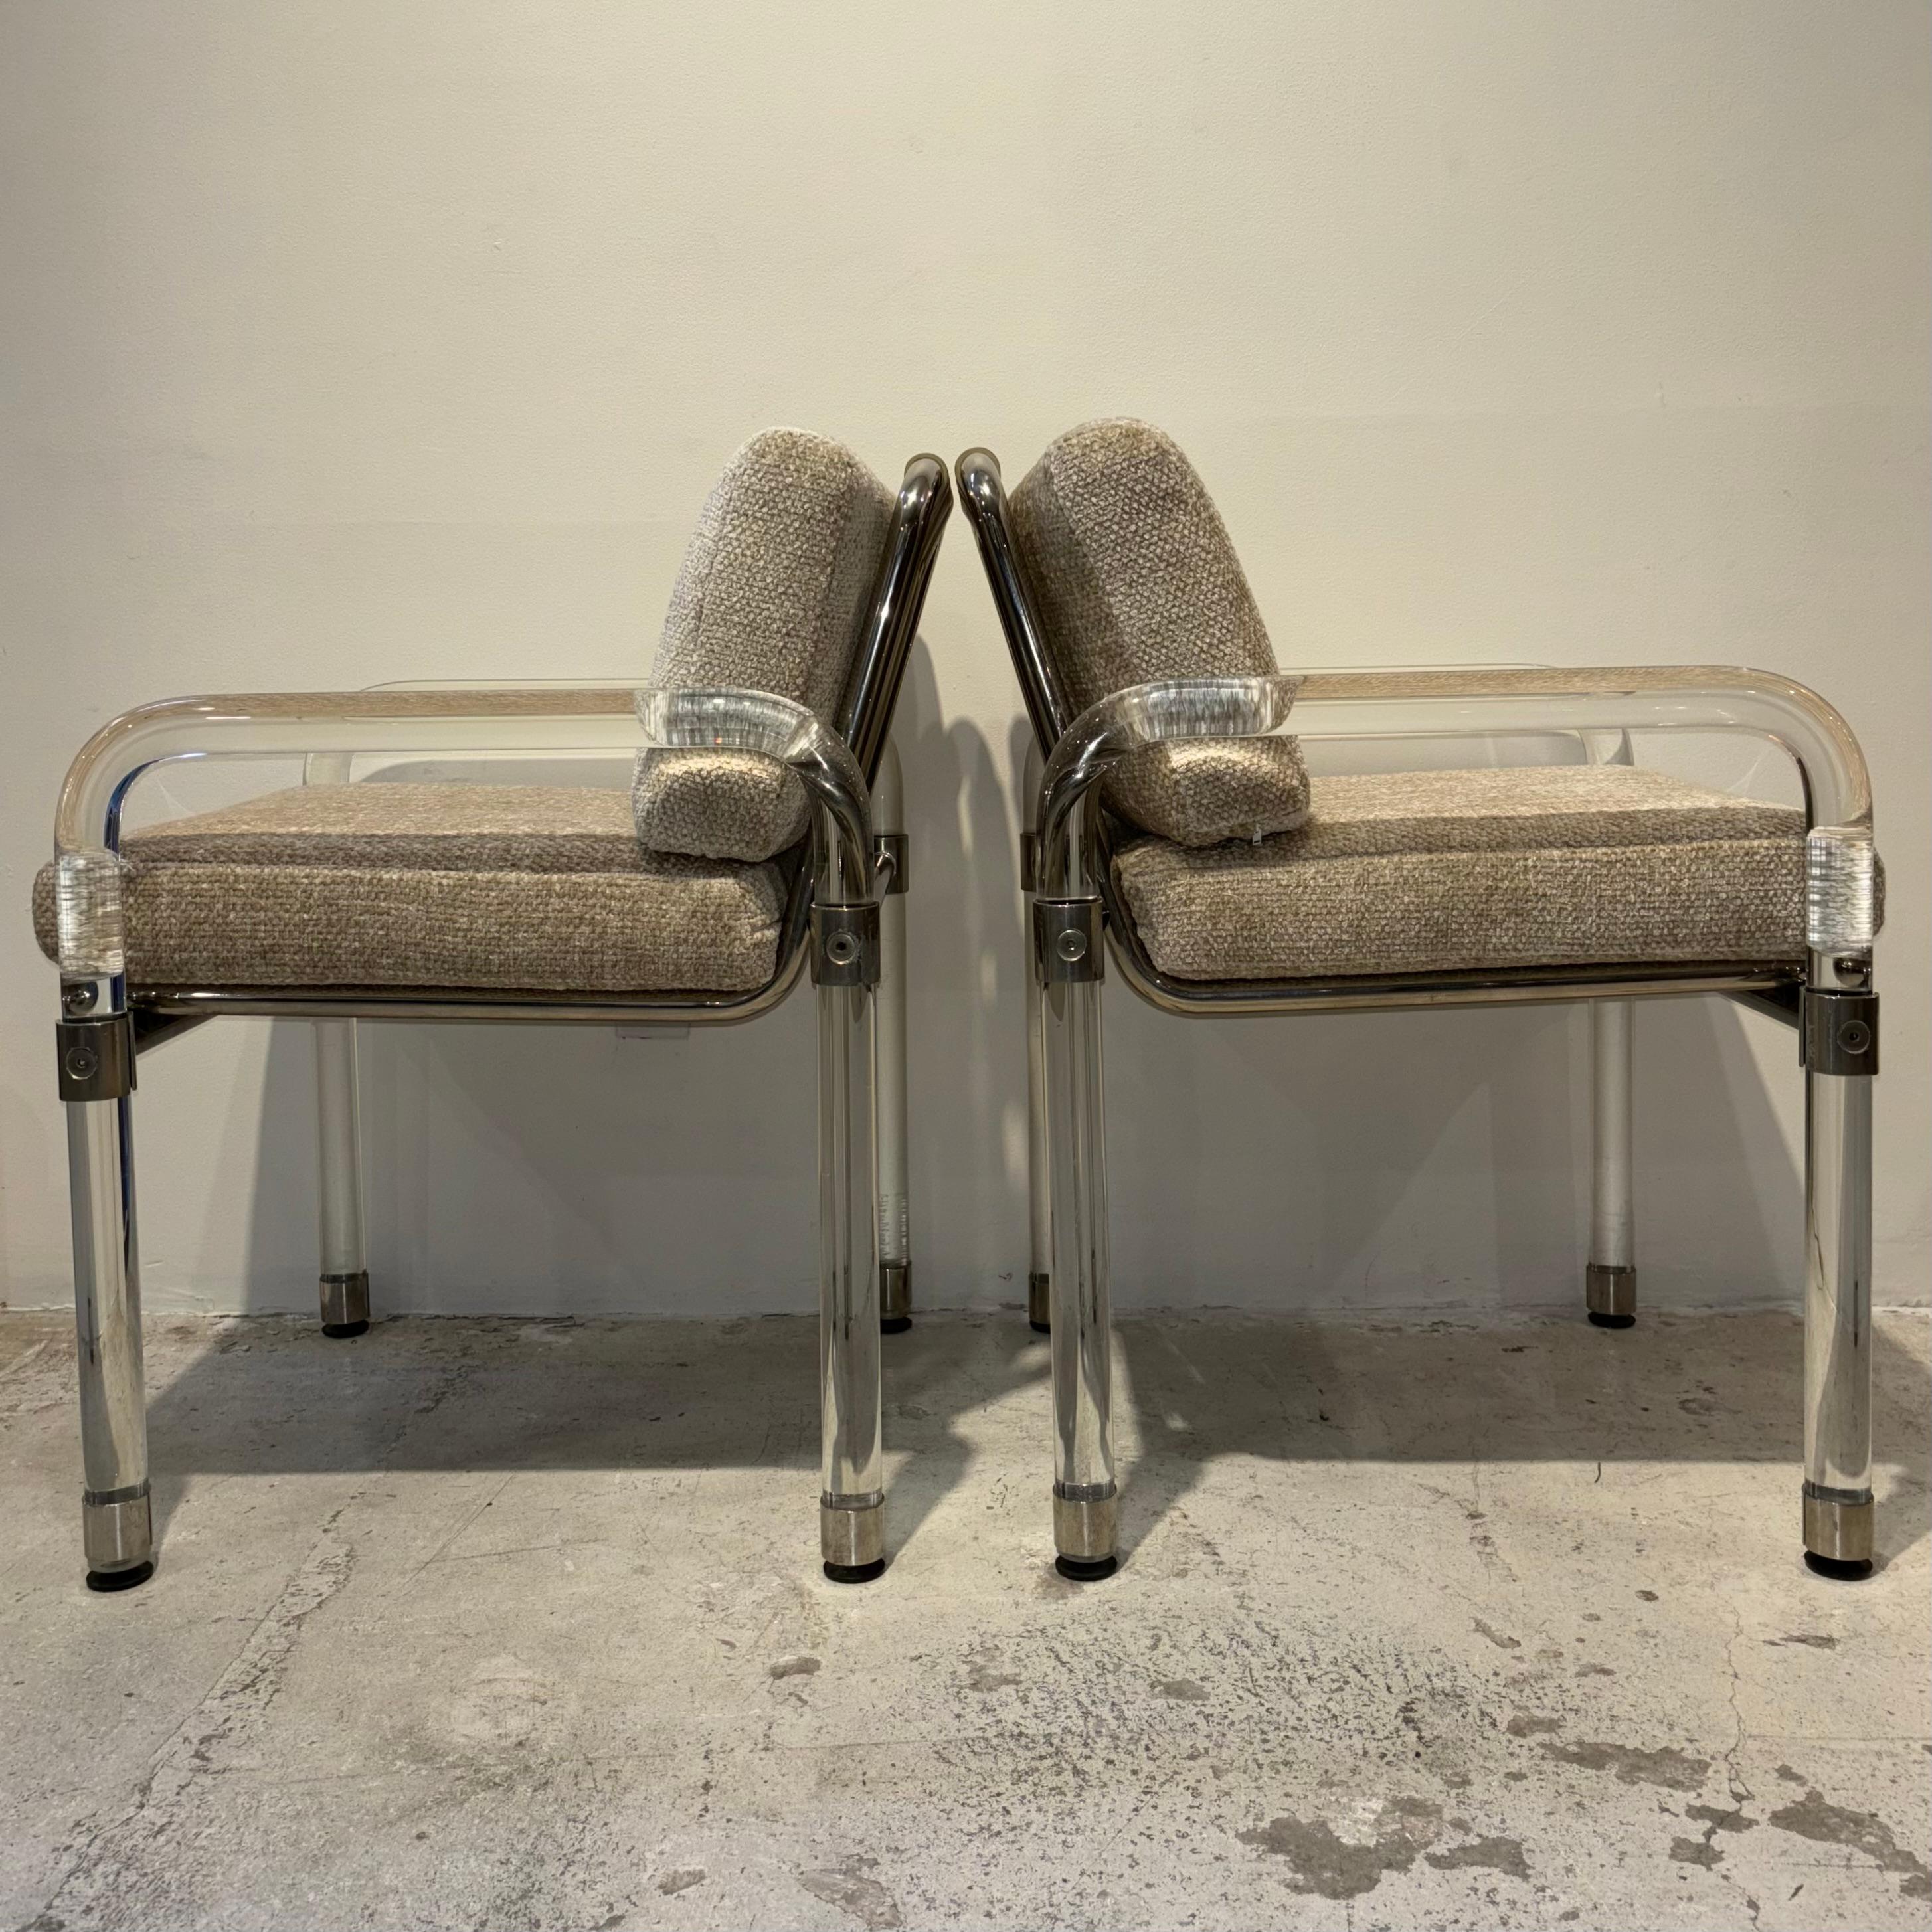 Ein Paar Stühle aus Lucite und cremefarbenem Leder mit Chromdetails von Jeff Messerschmidt

Handsigniert und datiert 